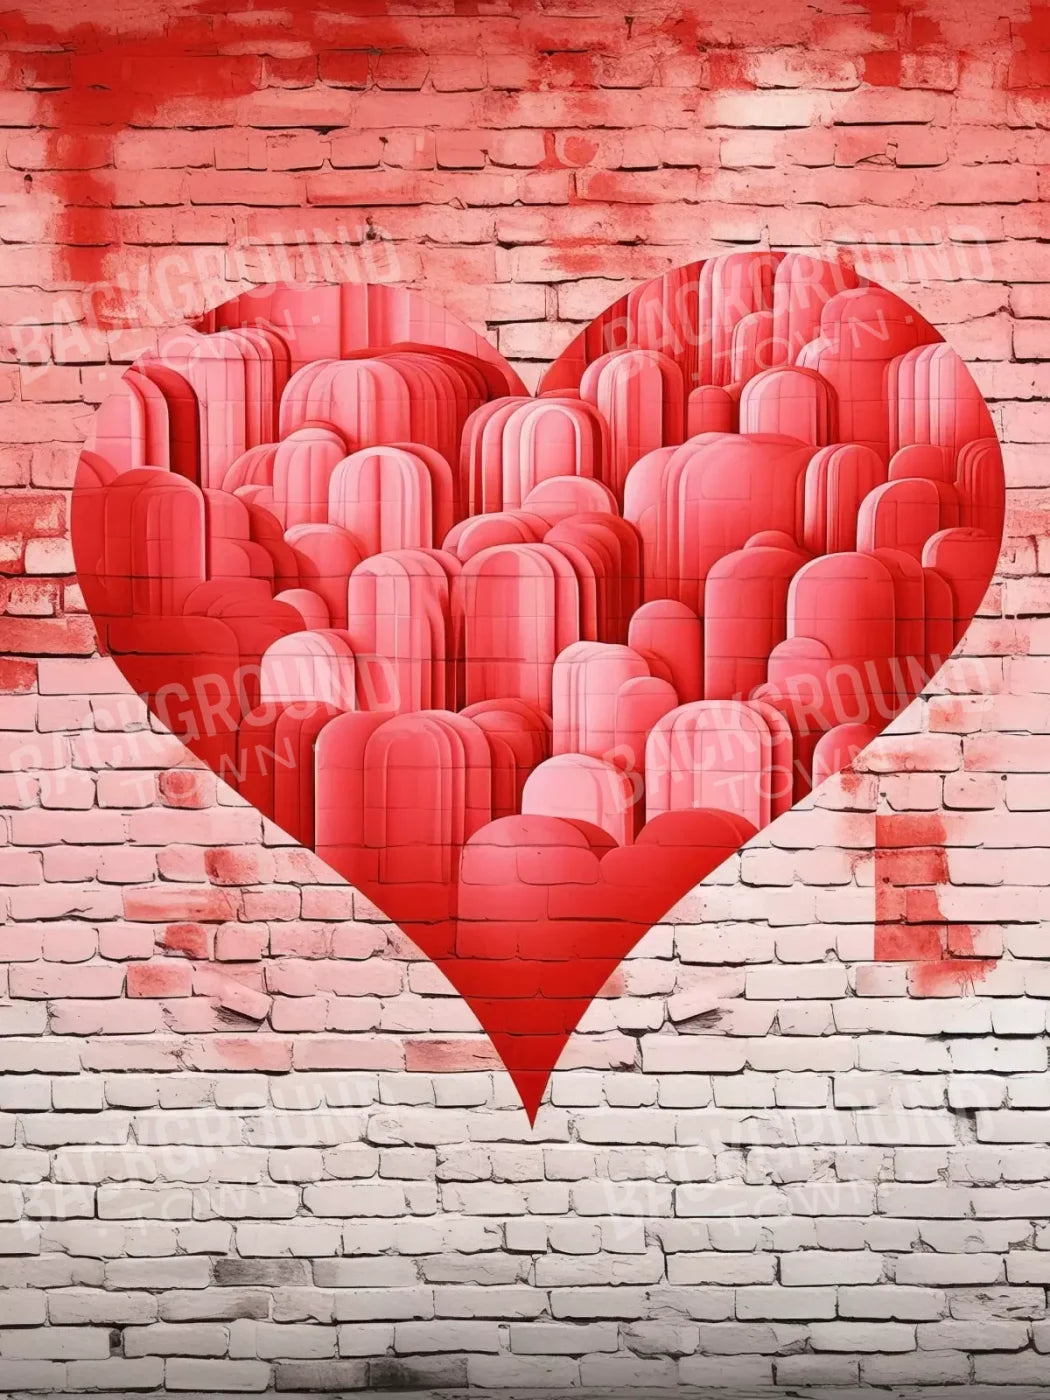 Graffitti Heart Iii 5’X6’8 Fleece (60 X 80 Inch) Backdrop